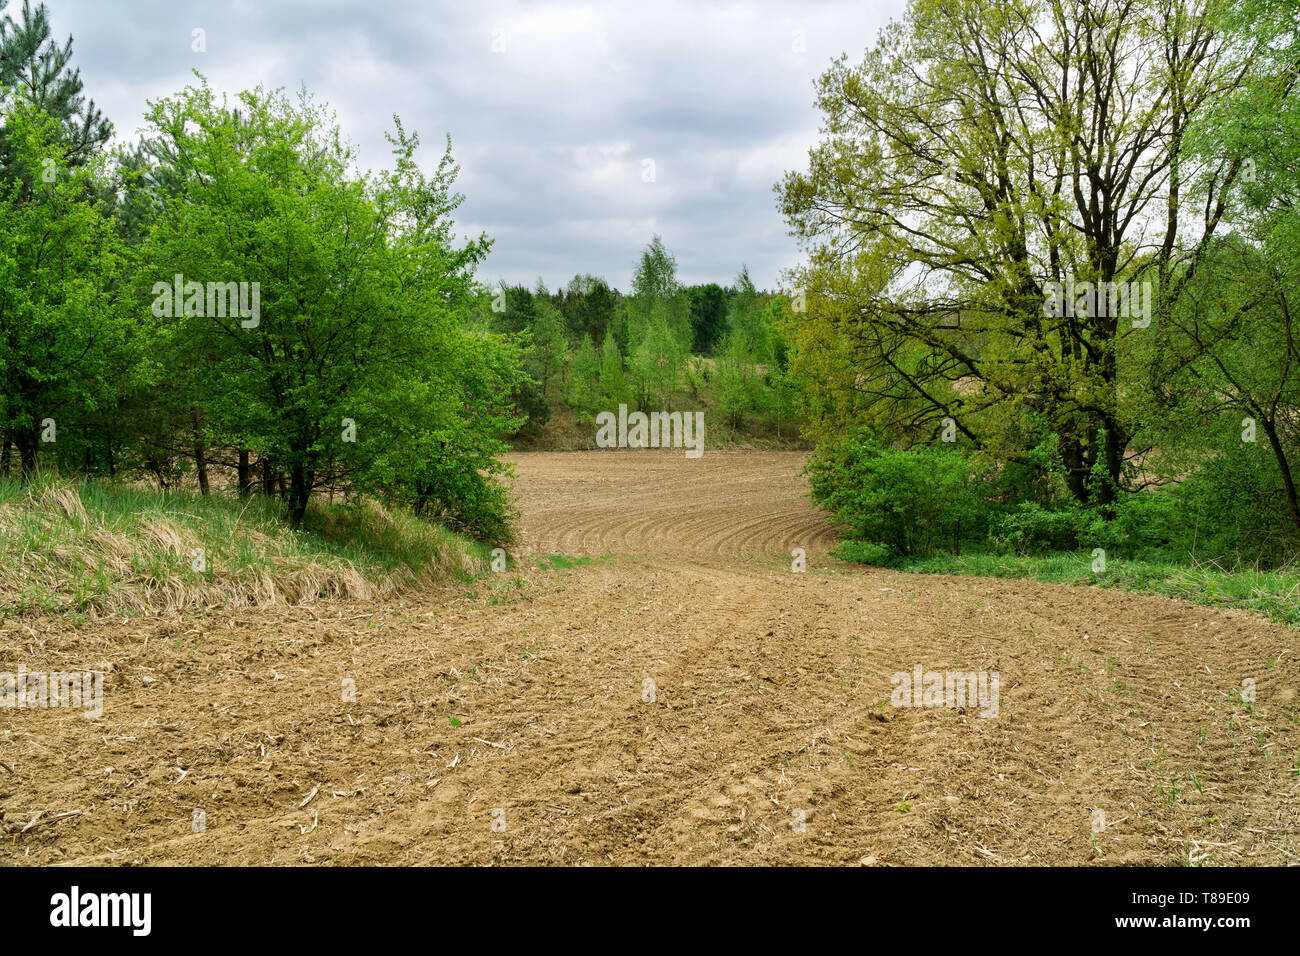 Printemps paysage rural en Pologne. Champ fraîchement labourés, sillons, feuilles vertes dans les arbres, forêt en arrière-plan, ciel nuageux. Banque D'Images